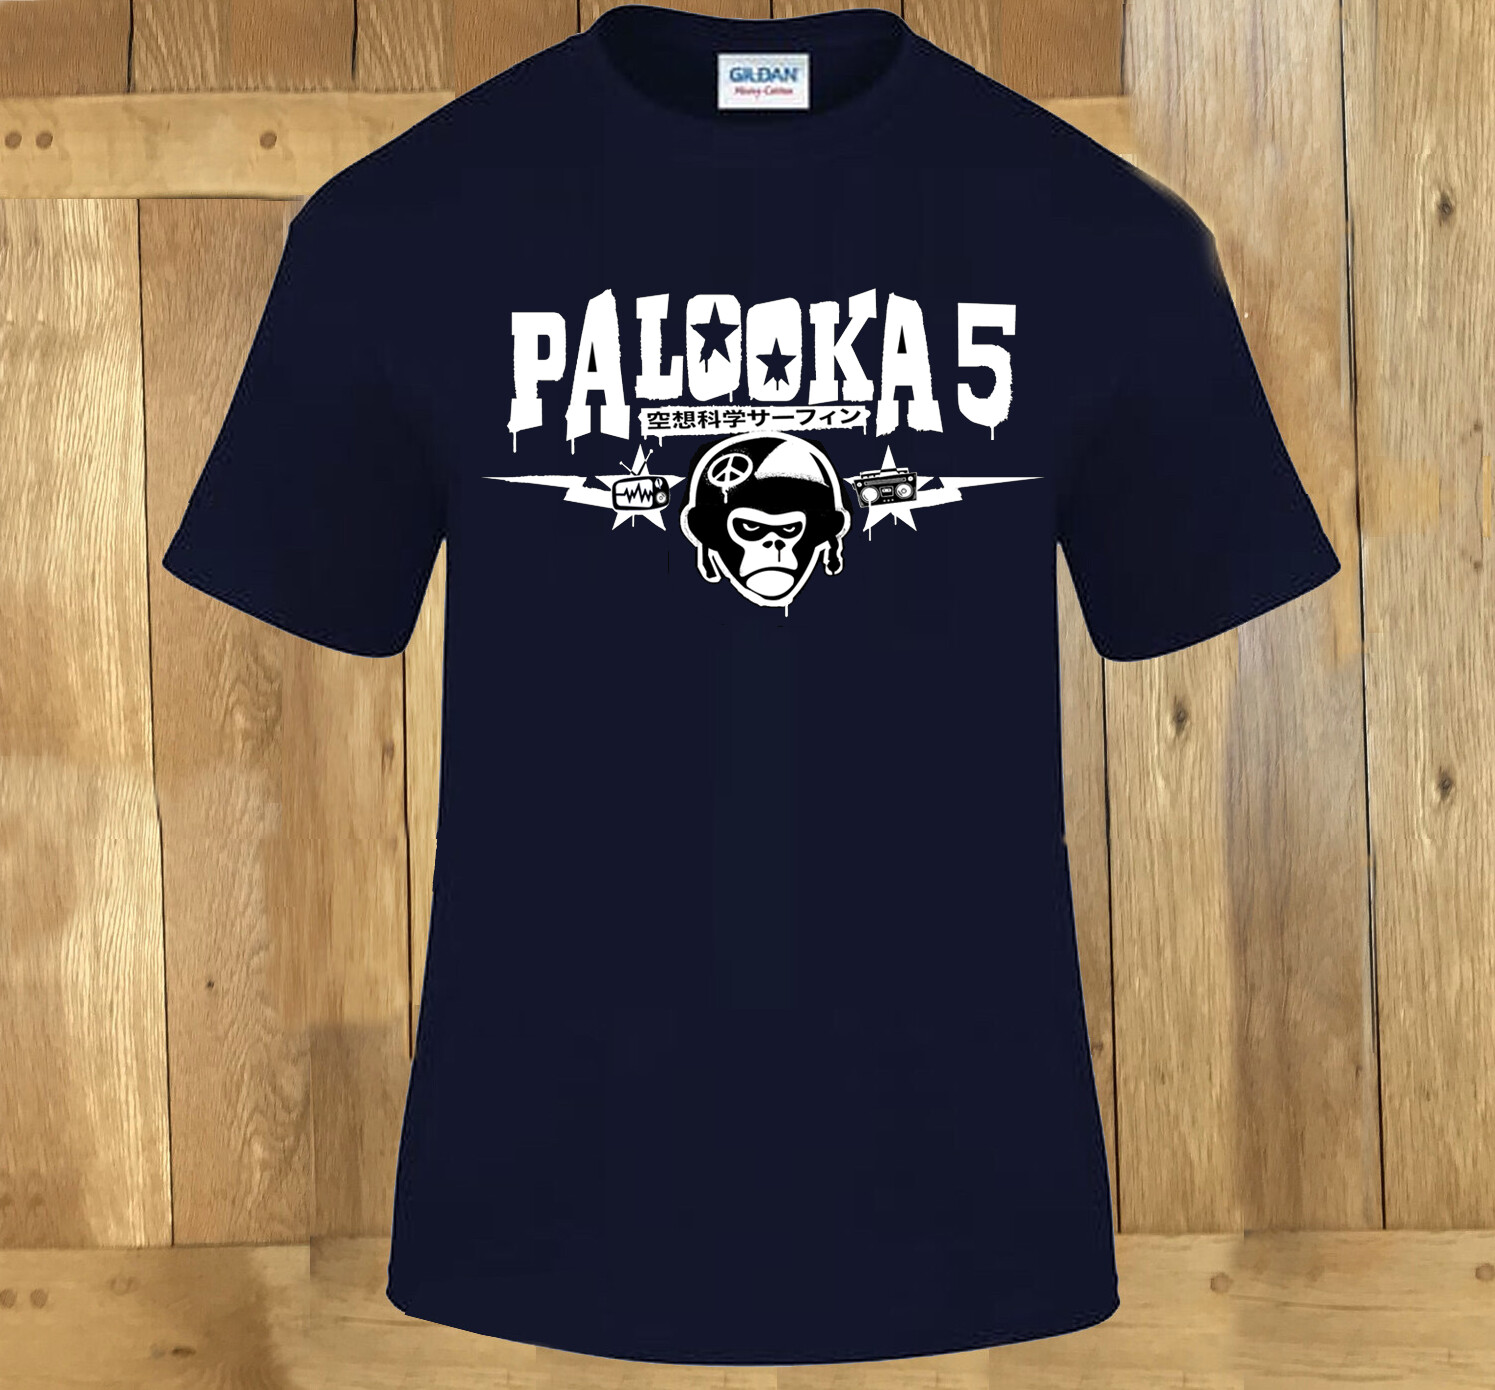 NEW Palooka 5 TShirt BLACK XLarge